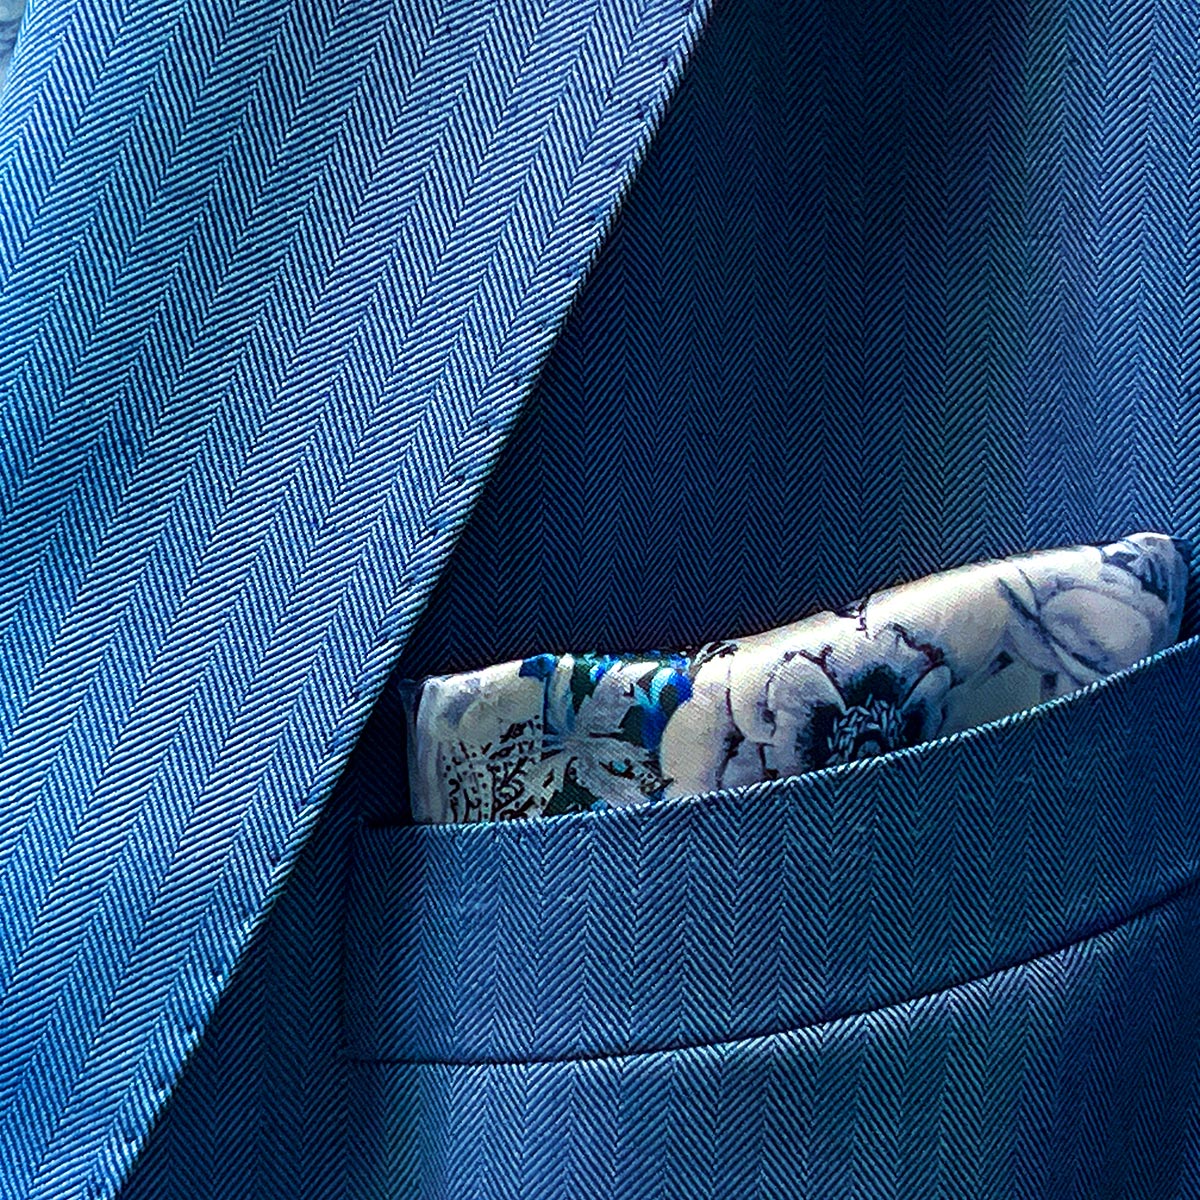 100% Australian Merino wool suit in a blue herringbone pattern, available at Men's Wearhouse.